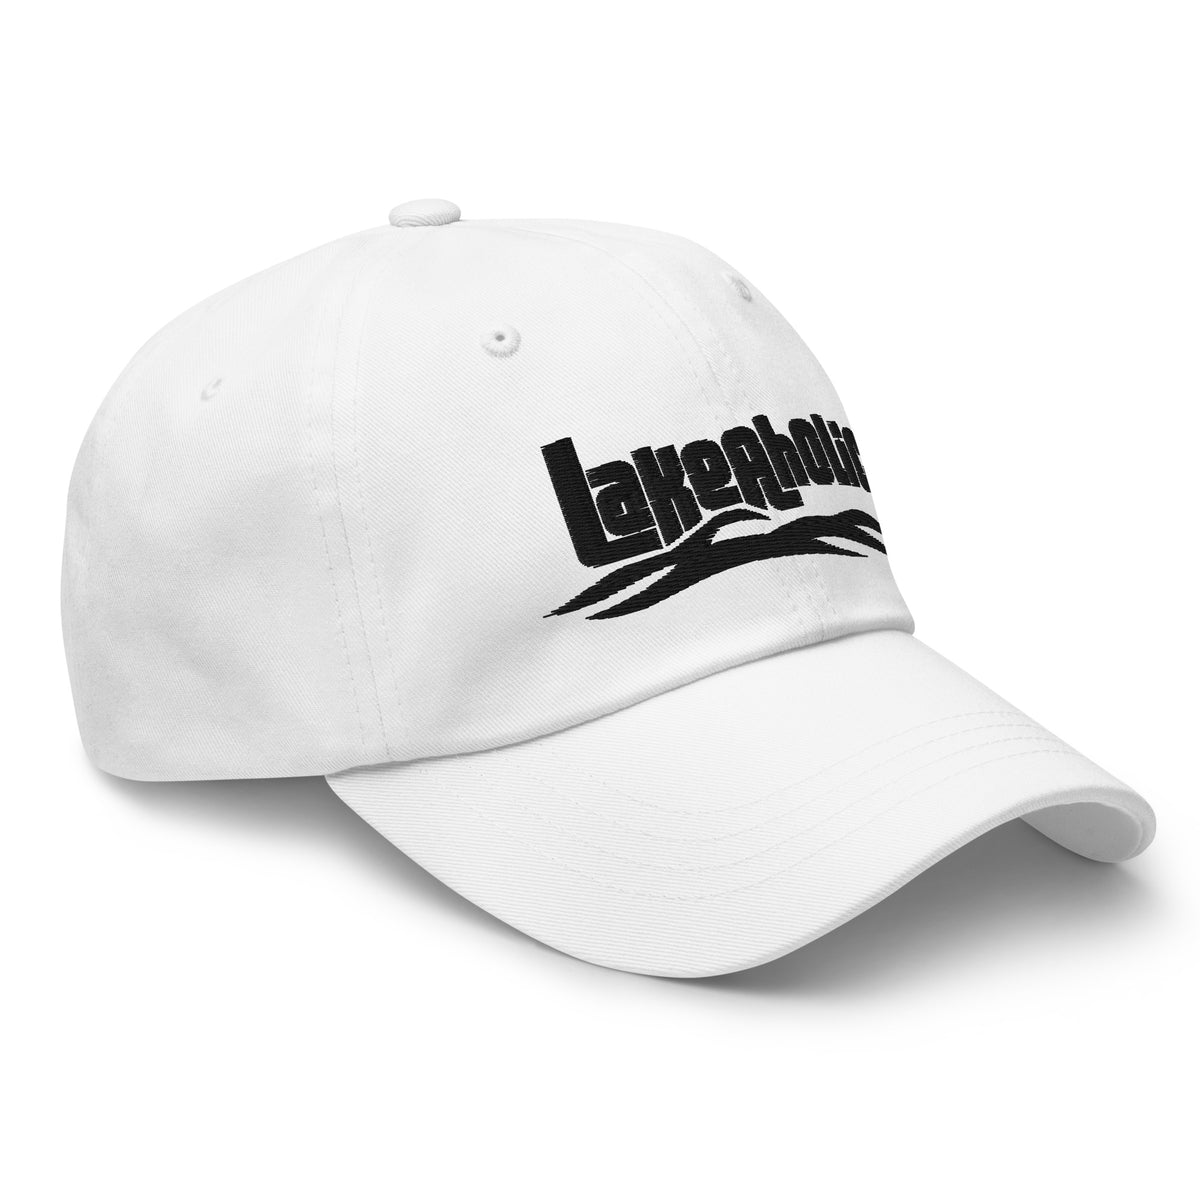 Lakeaholic Dad Hat